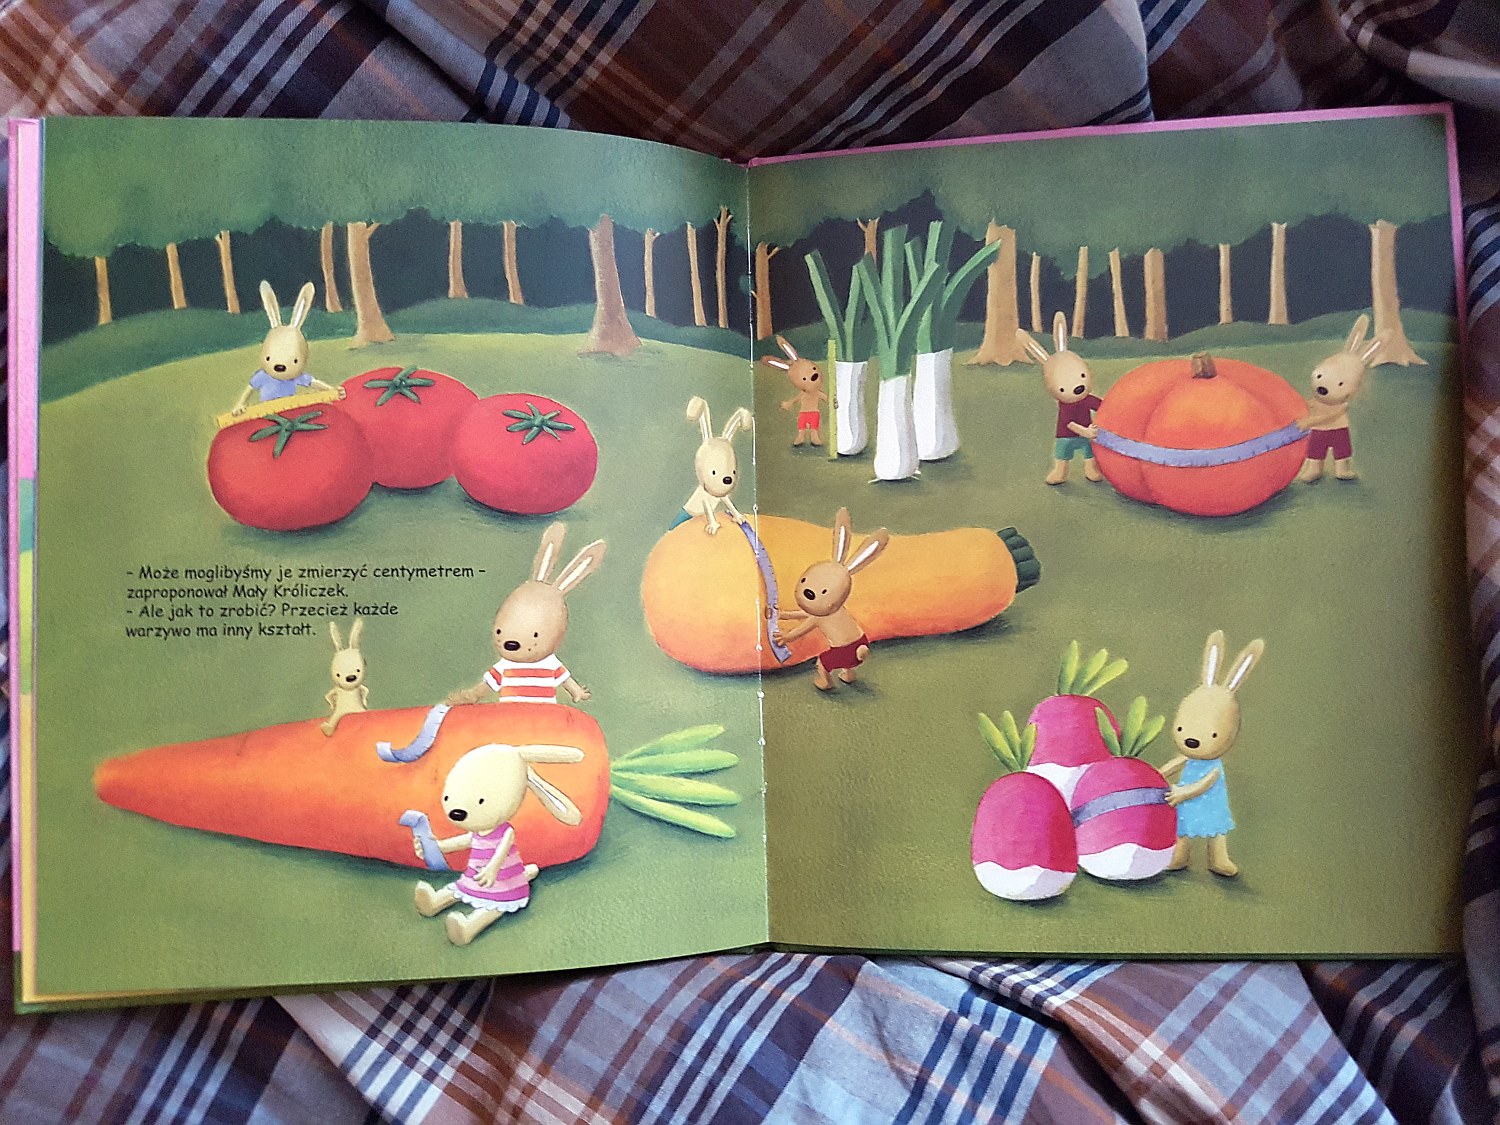 "Mały króliczek i jego magiczna marchewka"